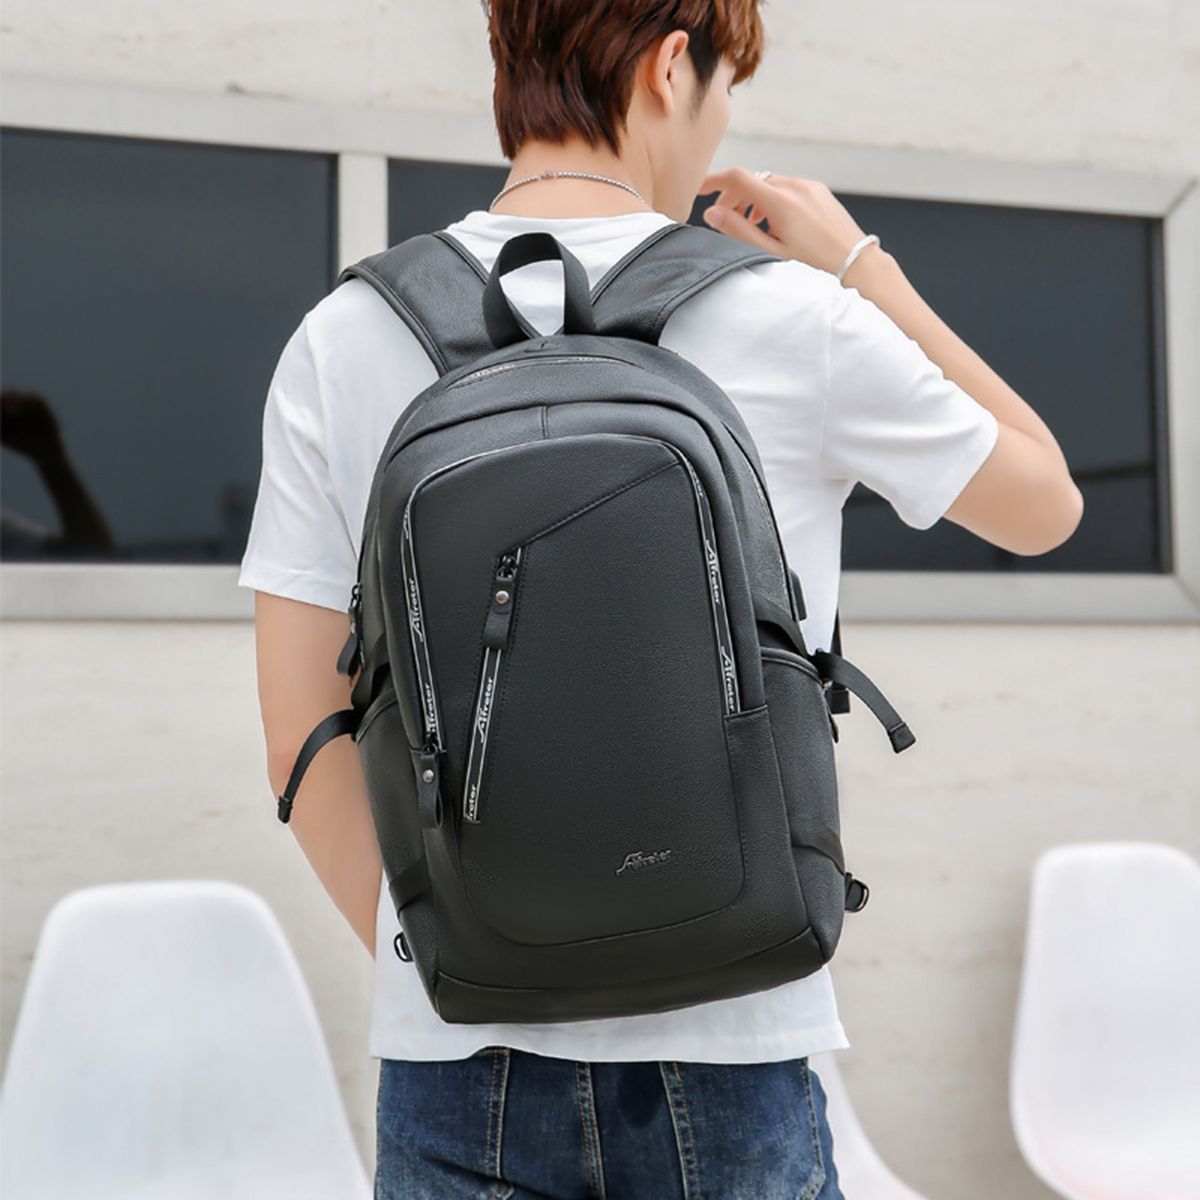 PU-Leather-Backpack-Laptop-Bag-Shoulder-Bag-with-USB-Charging-Waterproof-Travel-Storage-Bag-for-17-i-1748214